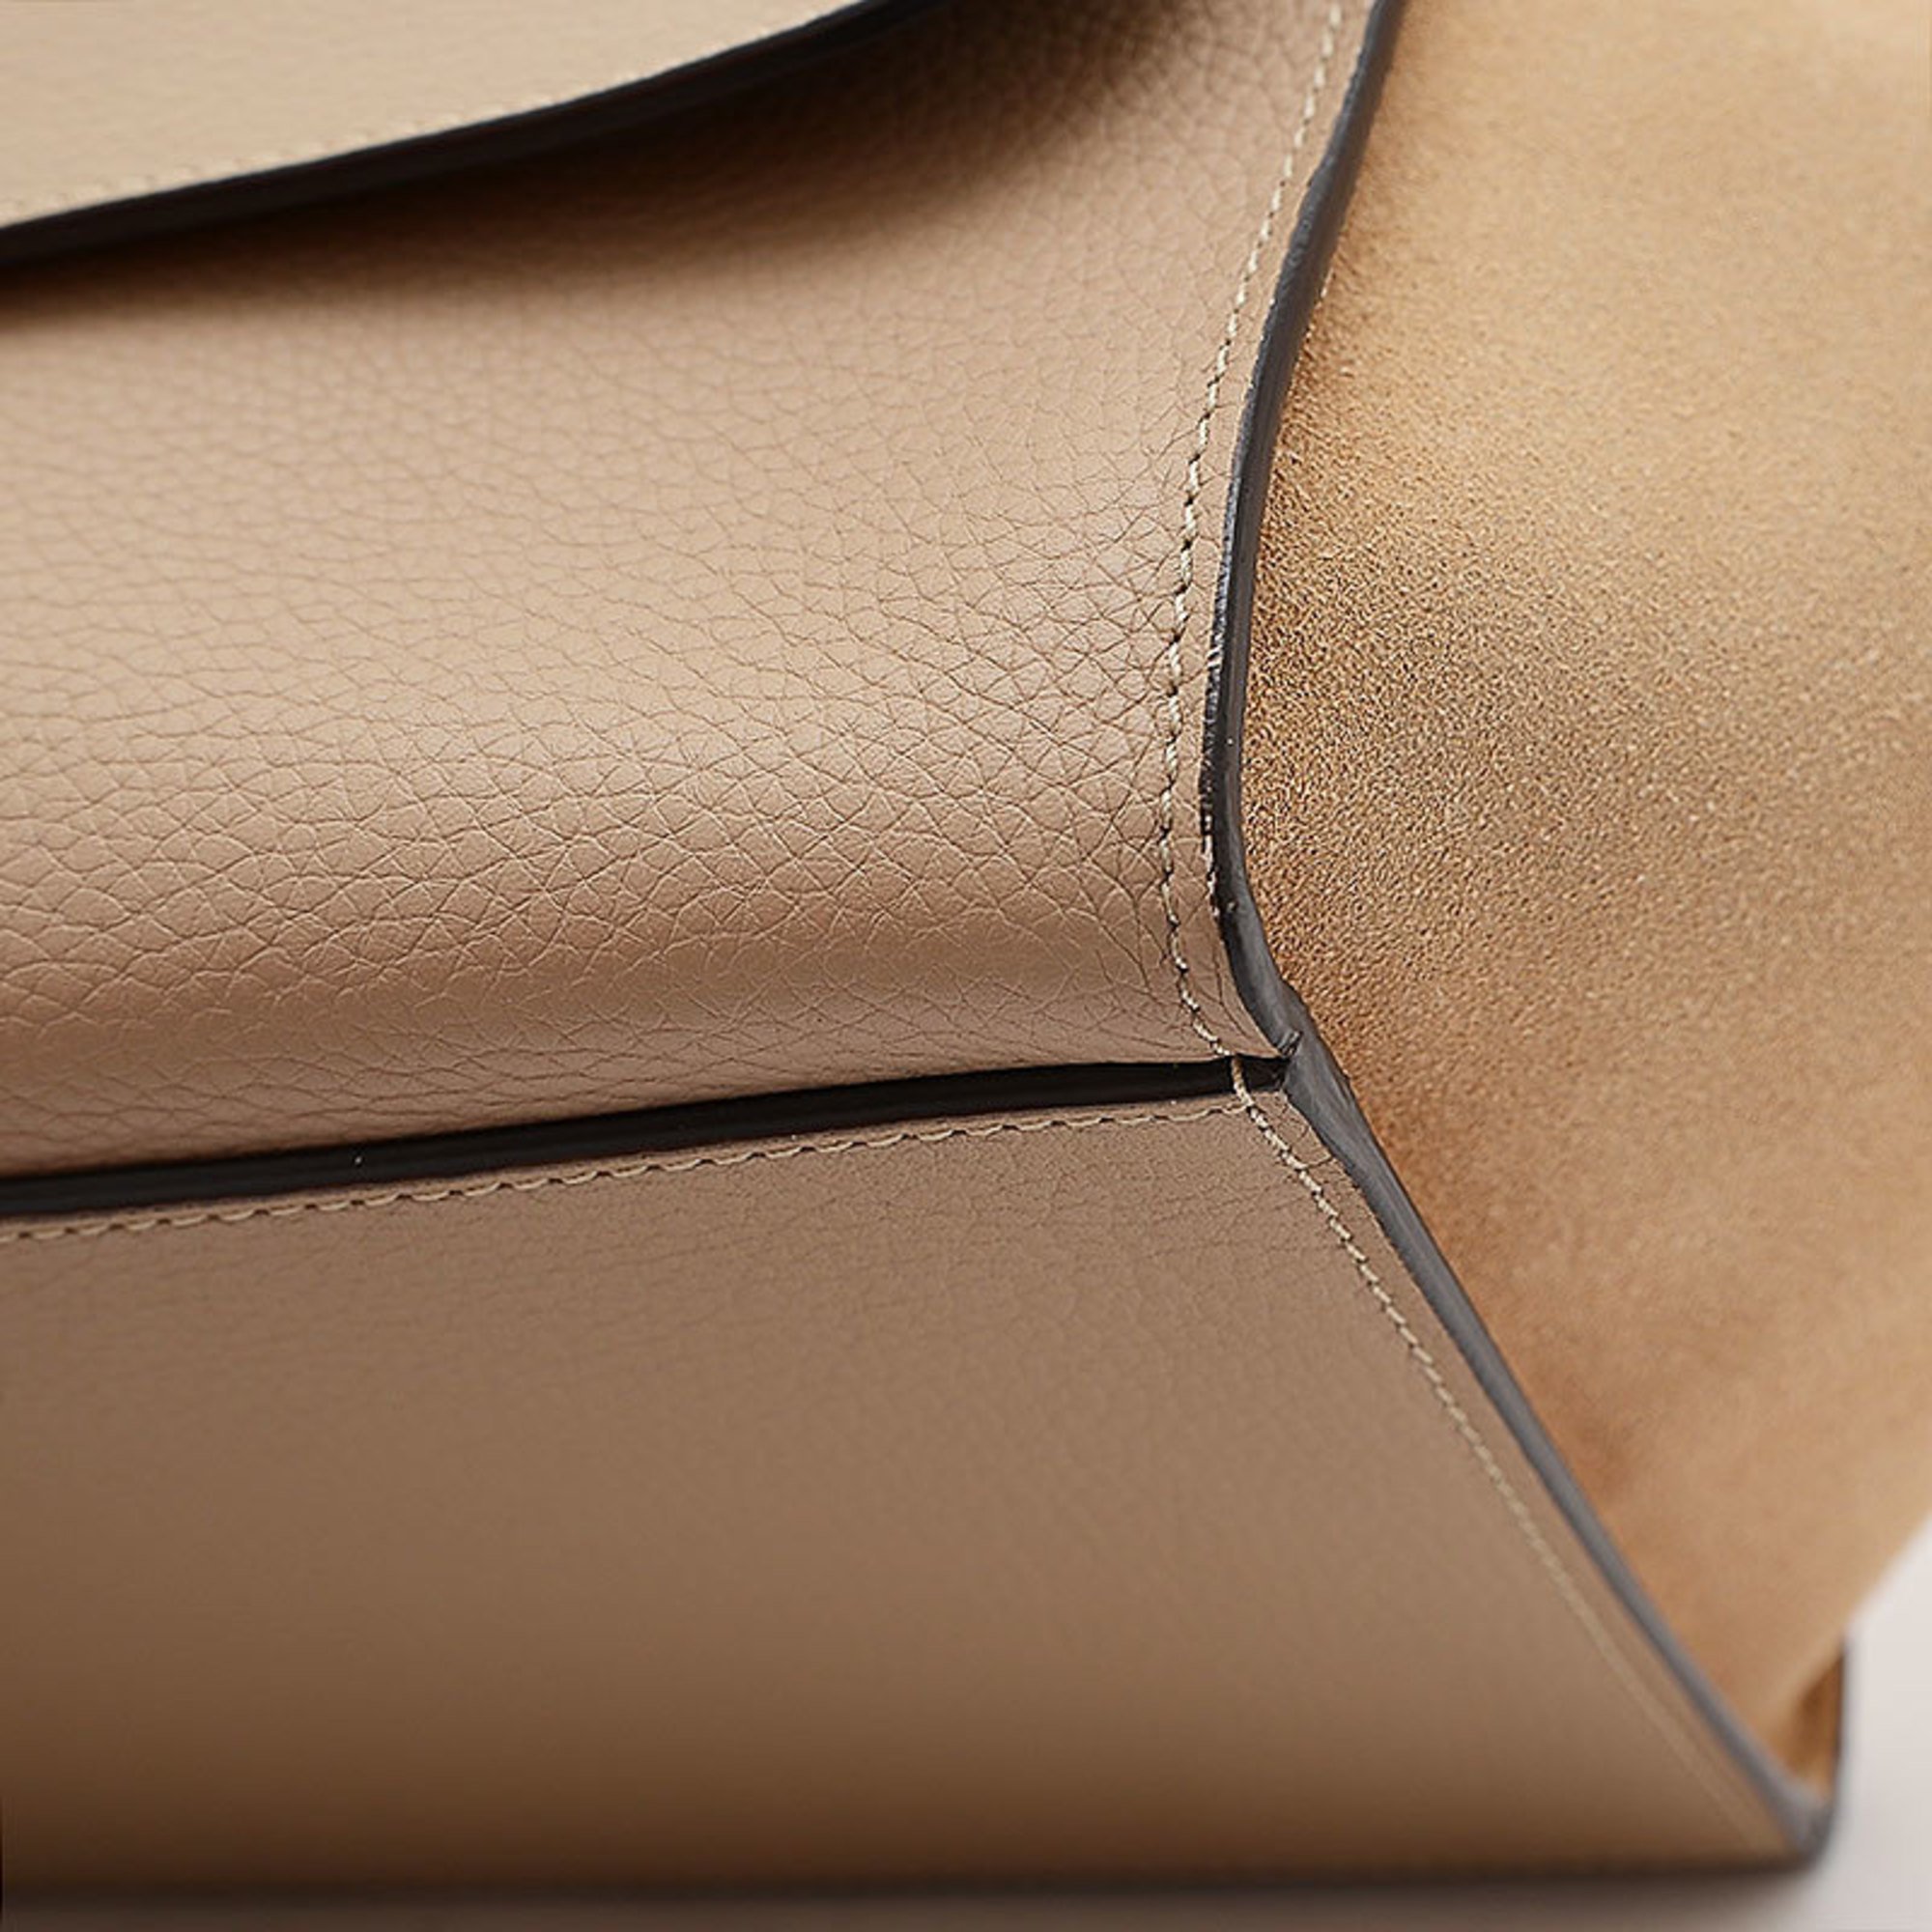 Celine Trapeze Medium 2-Way Bag Leather Suede Beige 169542